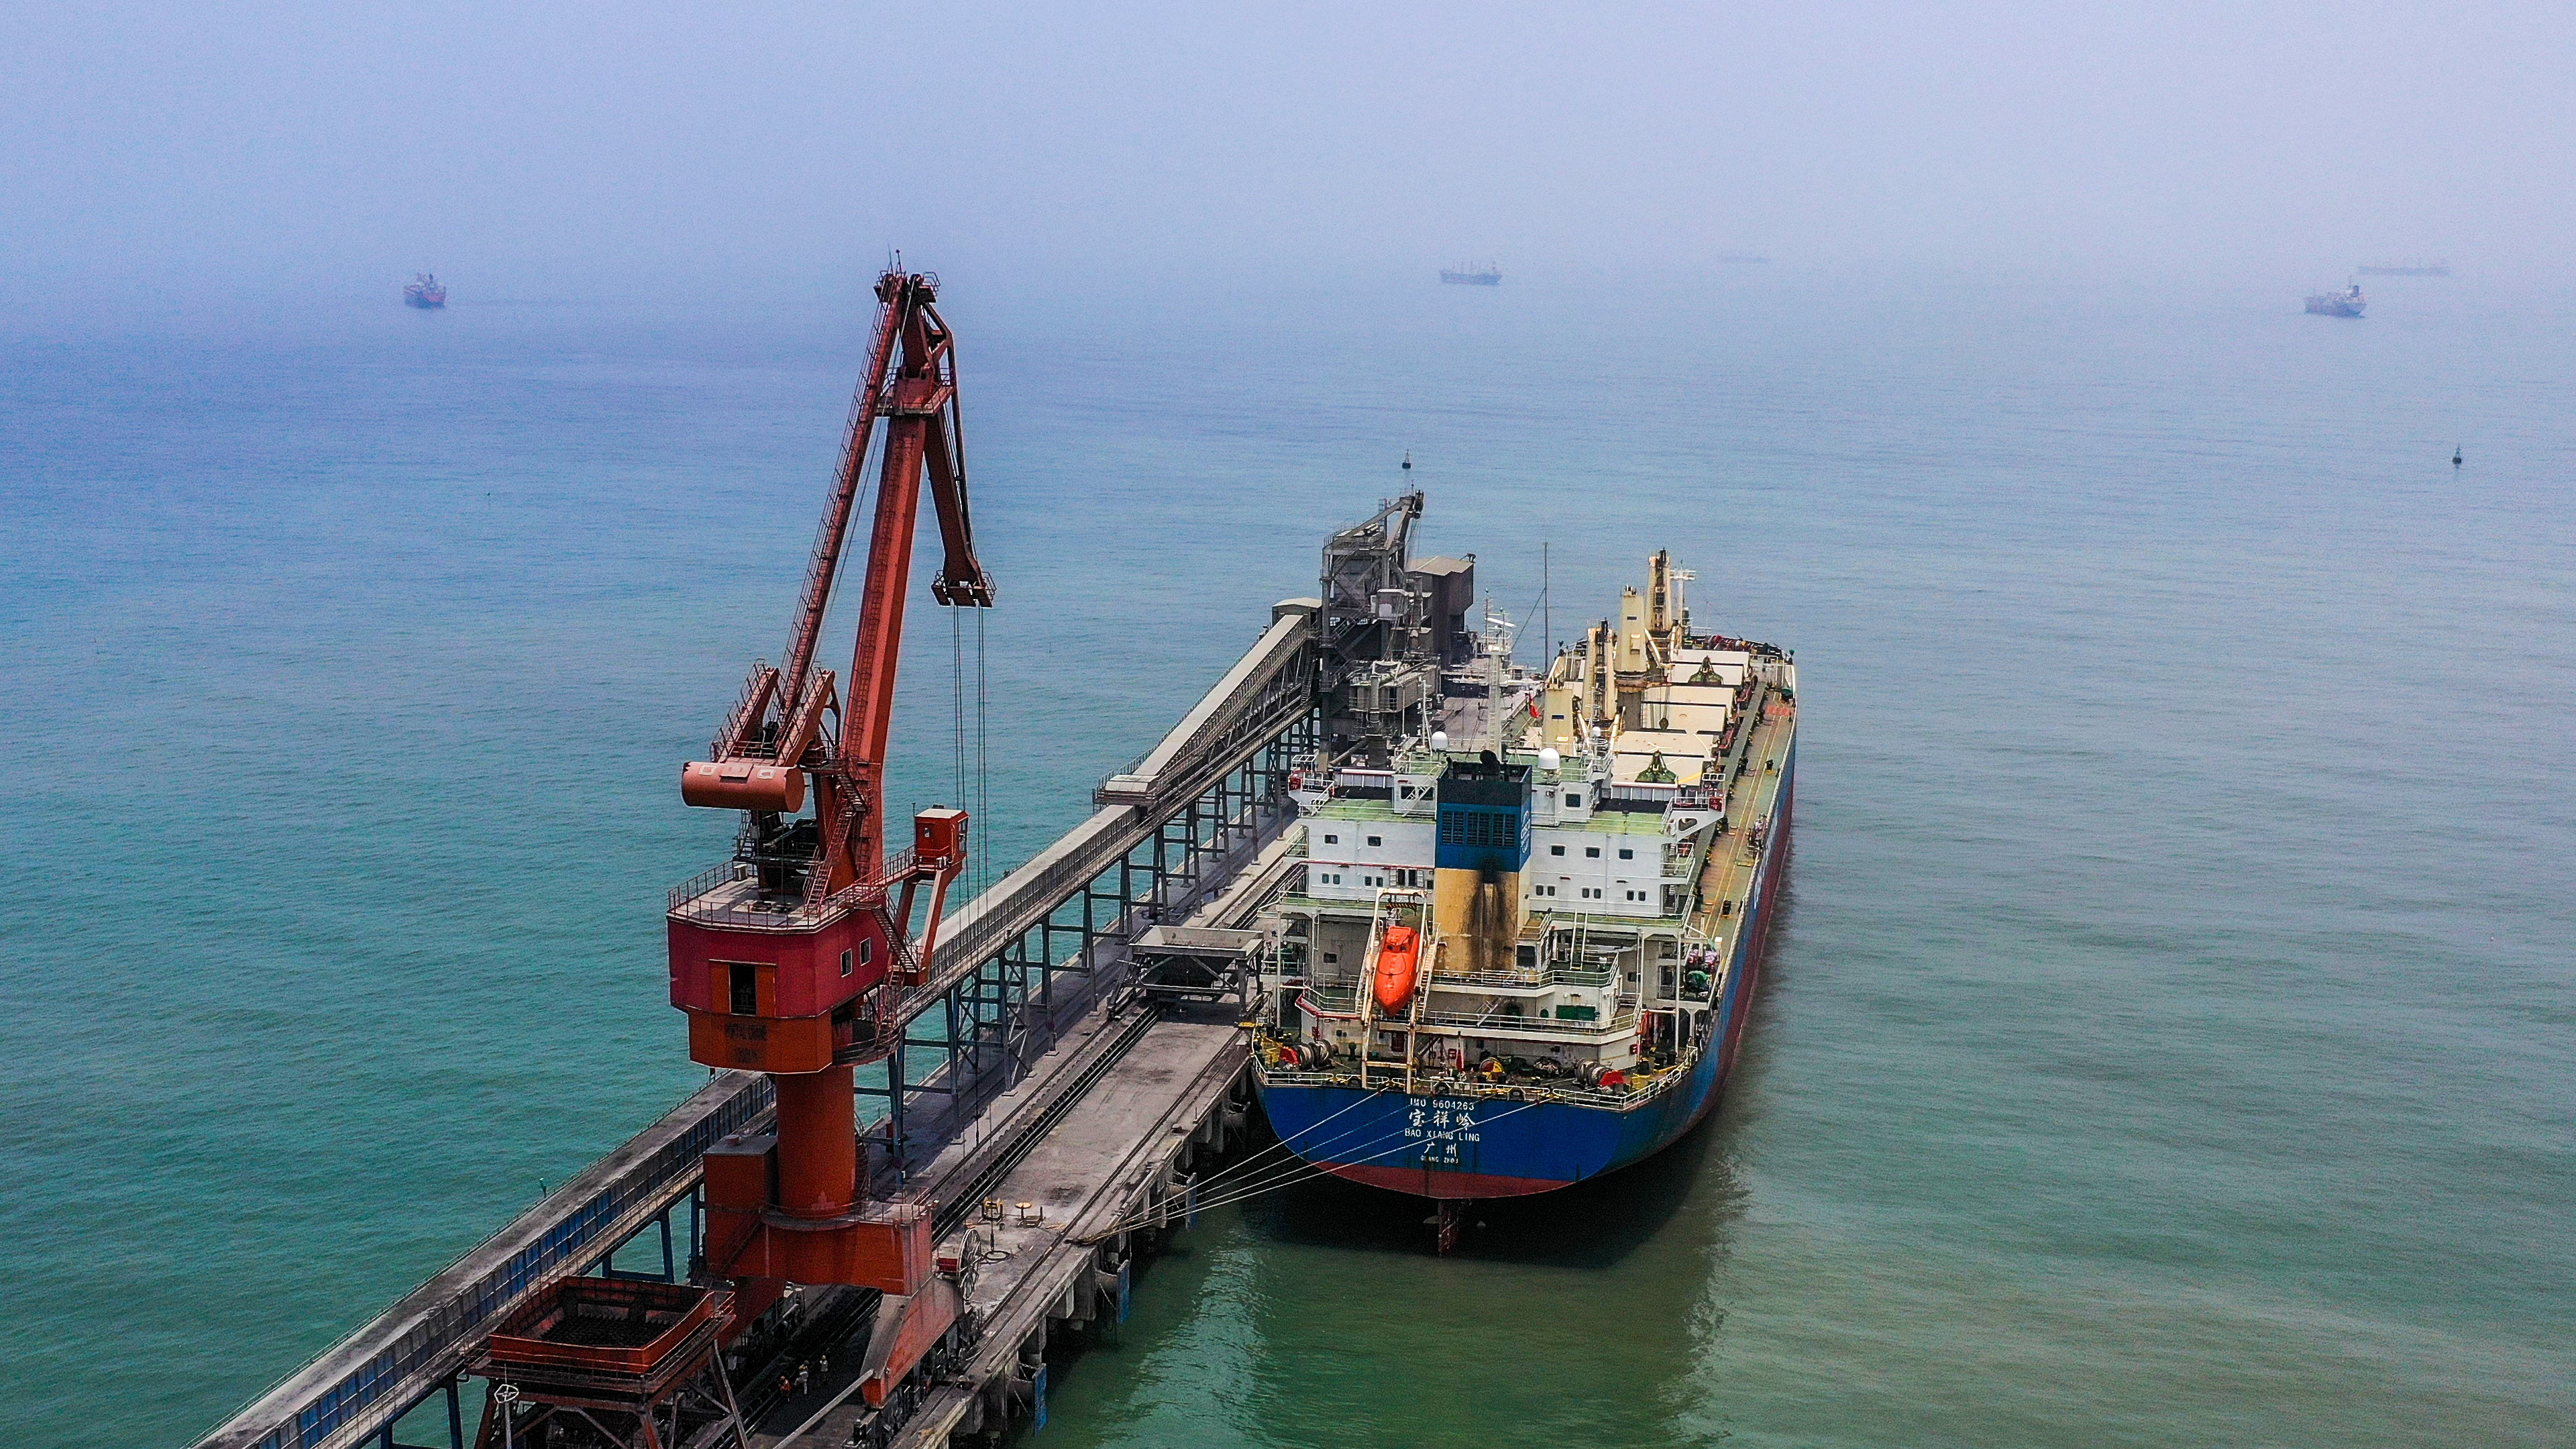 Tàu trọng tải lớn vào bốc xếp hàng hóa ở cầu cảng Vissai - Nghi Thiết. Ảnh: Sách Nguyễn